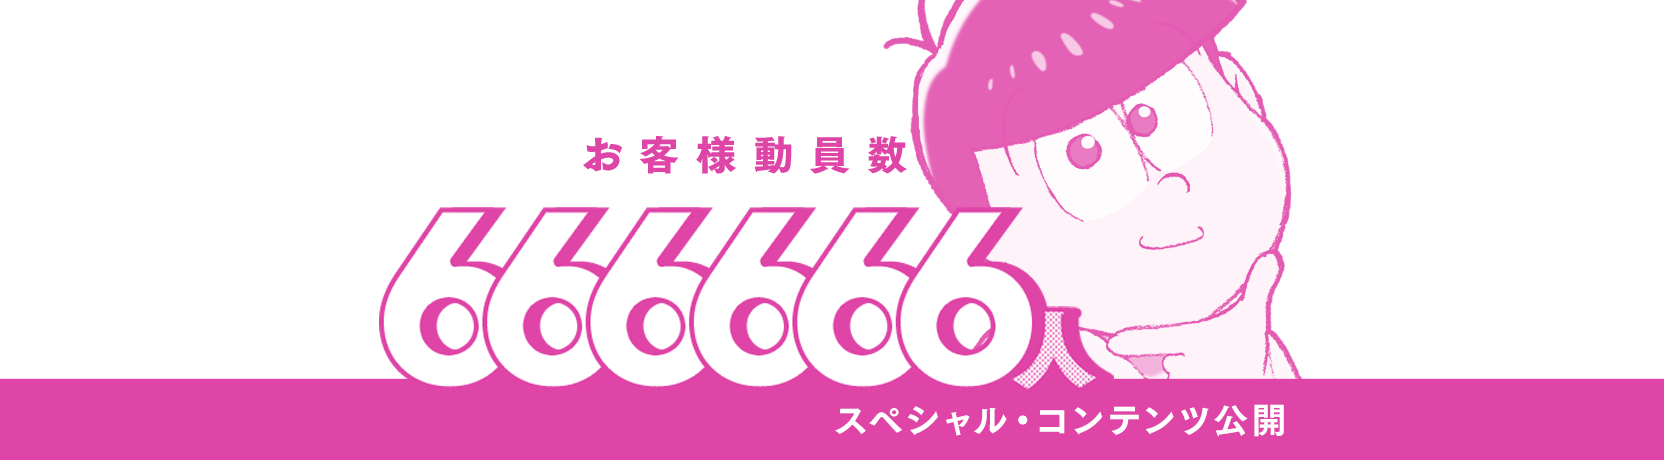 666666人達成　スペシャル・コンテンツ公開